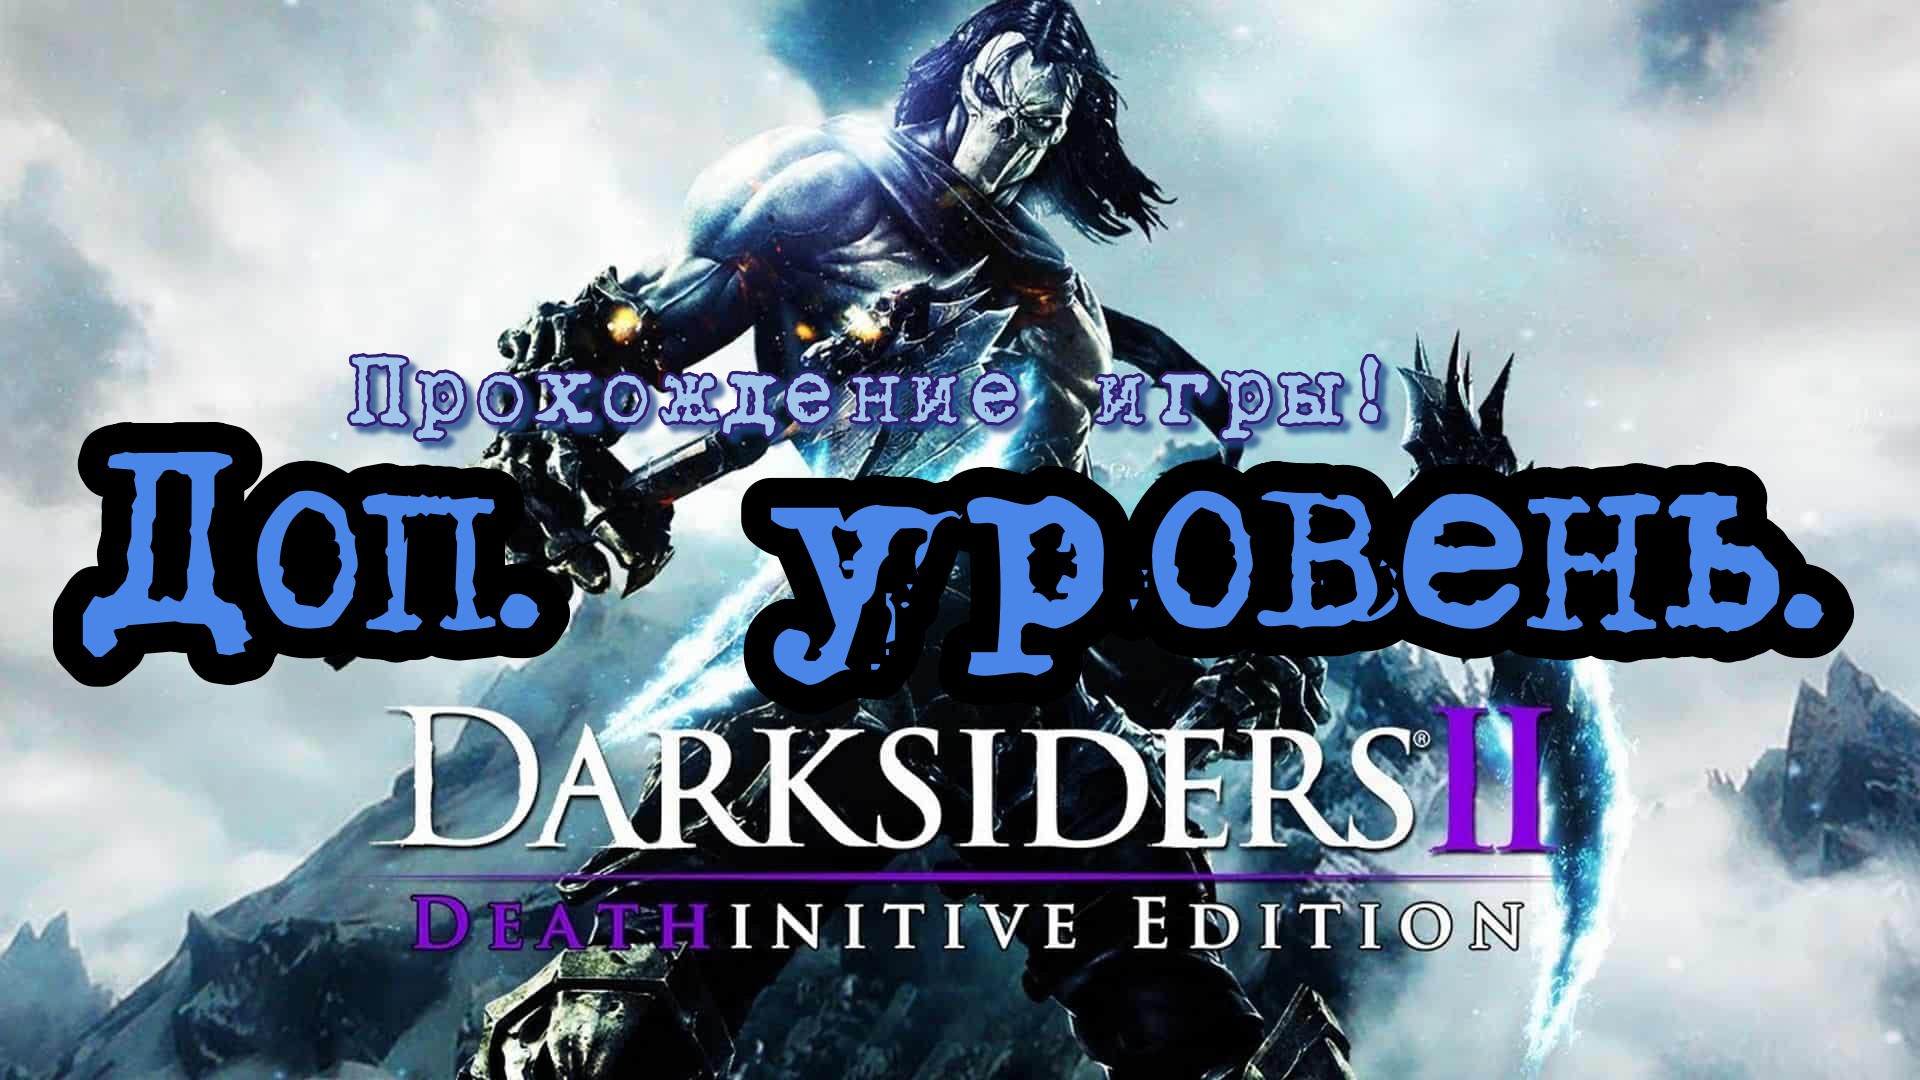 Прохождение игры - Darksiders 2 # 3. (Кузница в бездне) PC - HD - Full 1080p.